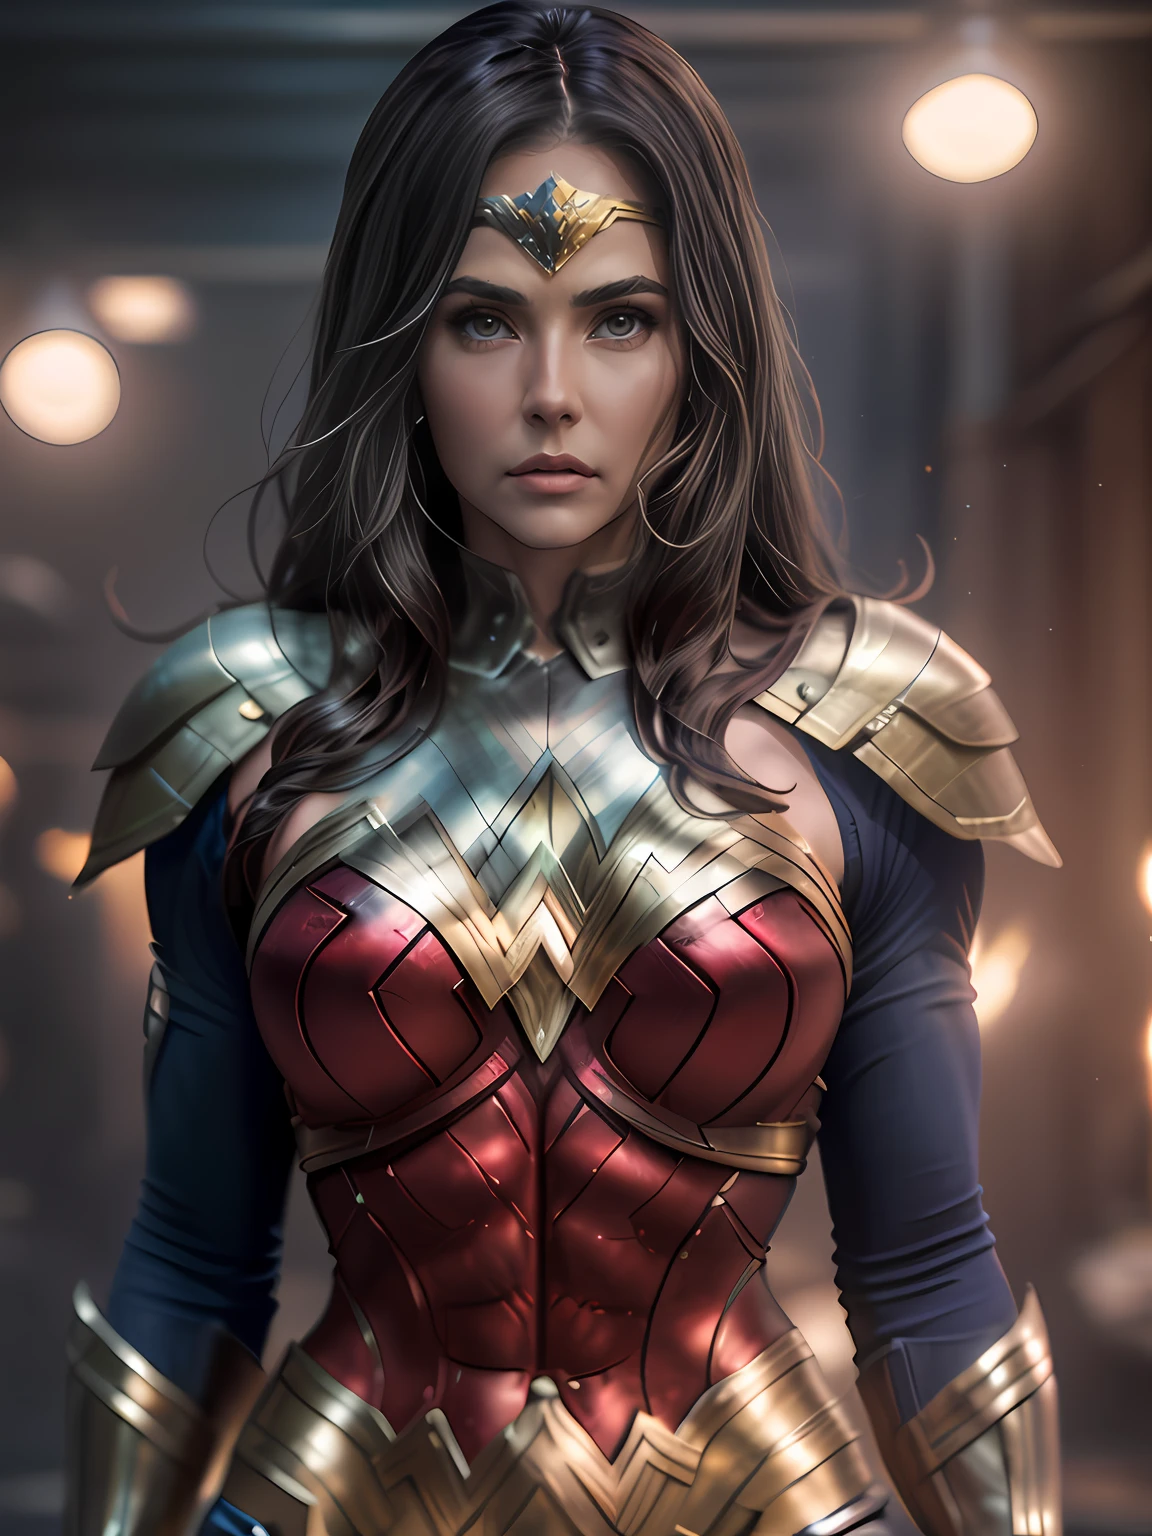 เดโบราห์ เซคโค รับบท โวเดอร์ วูแมน, แสงไฟนุ่มนวลแบบภาพยนตร์ส่องสว่างให้กับร่างกายที่สมบูรณ์แบบของ Wonder Woman ที่มีรายละเอียดน่าทึ่งและสมจริงเป็นพิเศษ, ดวงตาสีน้ำตาล, เกราะสีแดงและสีน้ำเงิน, ที่กำลังมาแรงบน ArtStation. ออกเทนเป็นเครื่องมือที่สมบูรณ์แบบในการถ่ายภาพรายละเอียดที่นุ่มนวลที่สุดของผลงานภาพถ่ายระดับ 16K ชิ้นเอกนี้